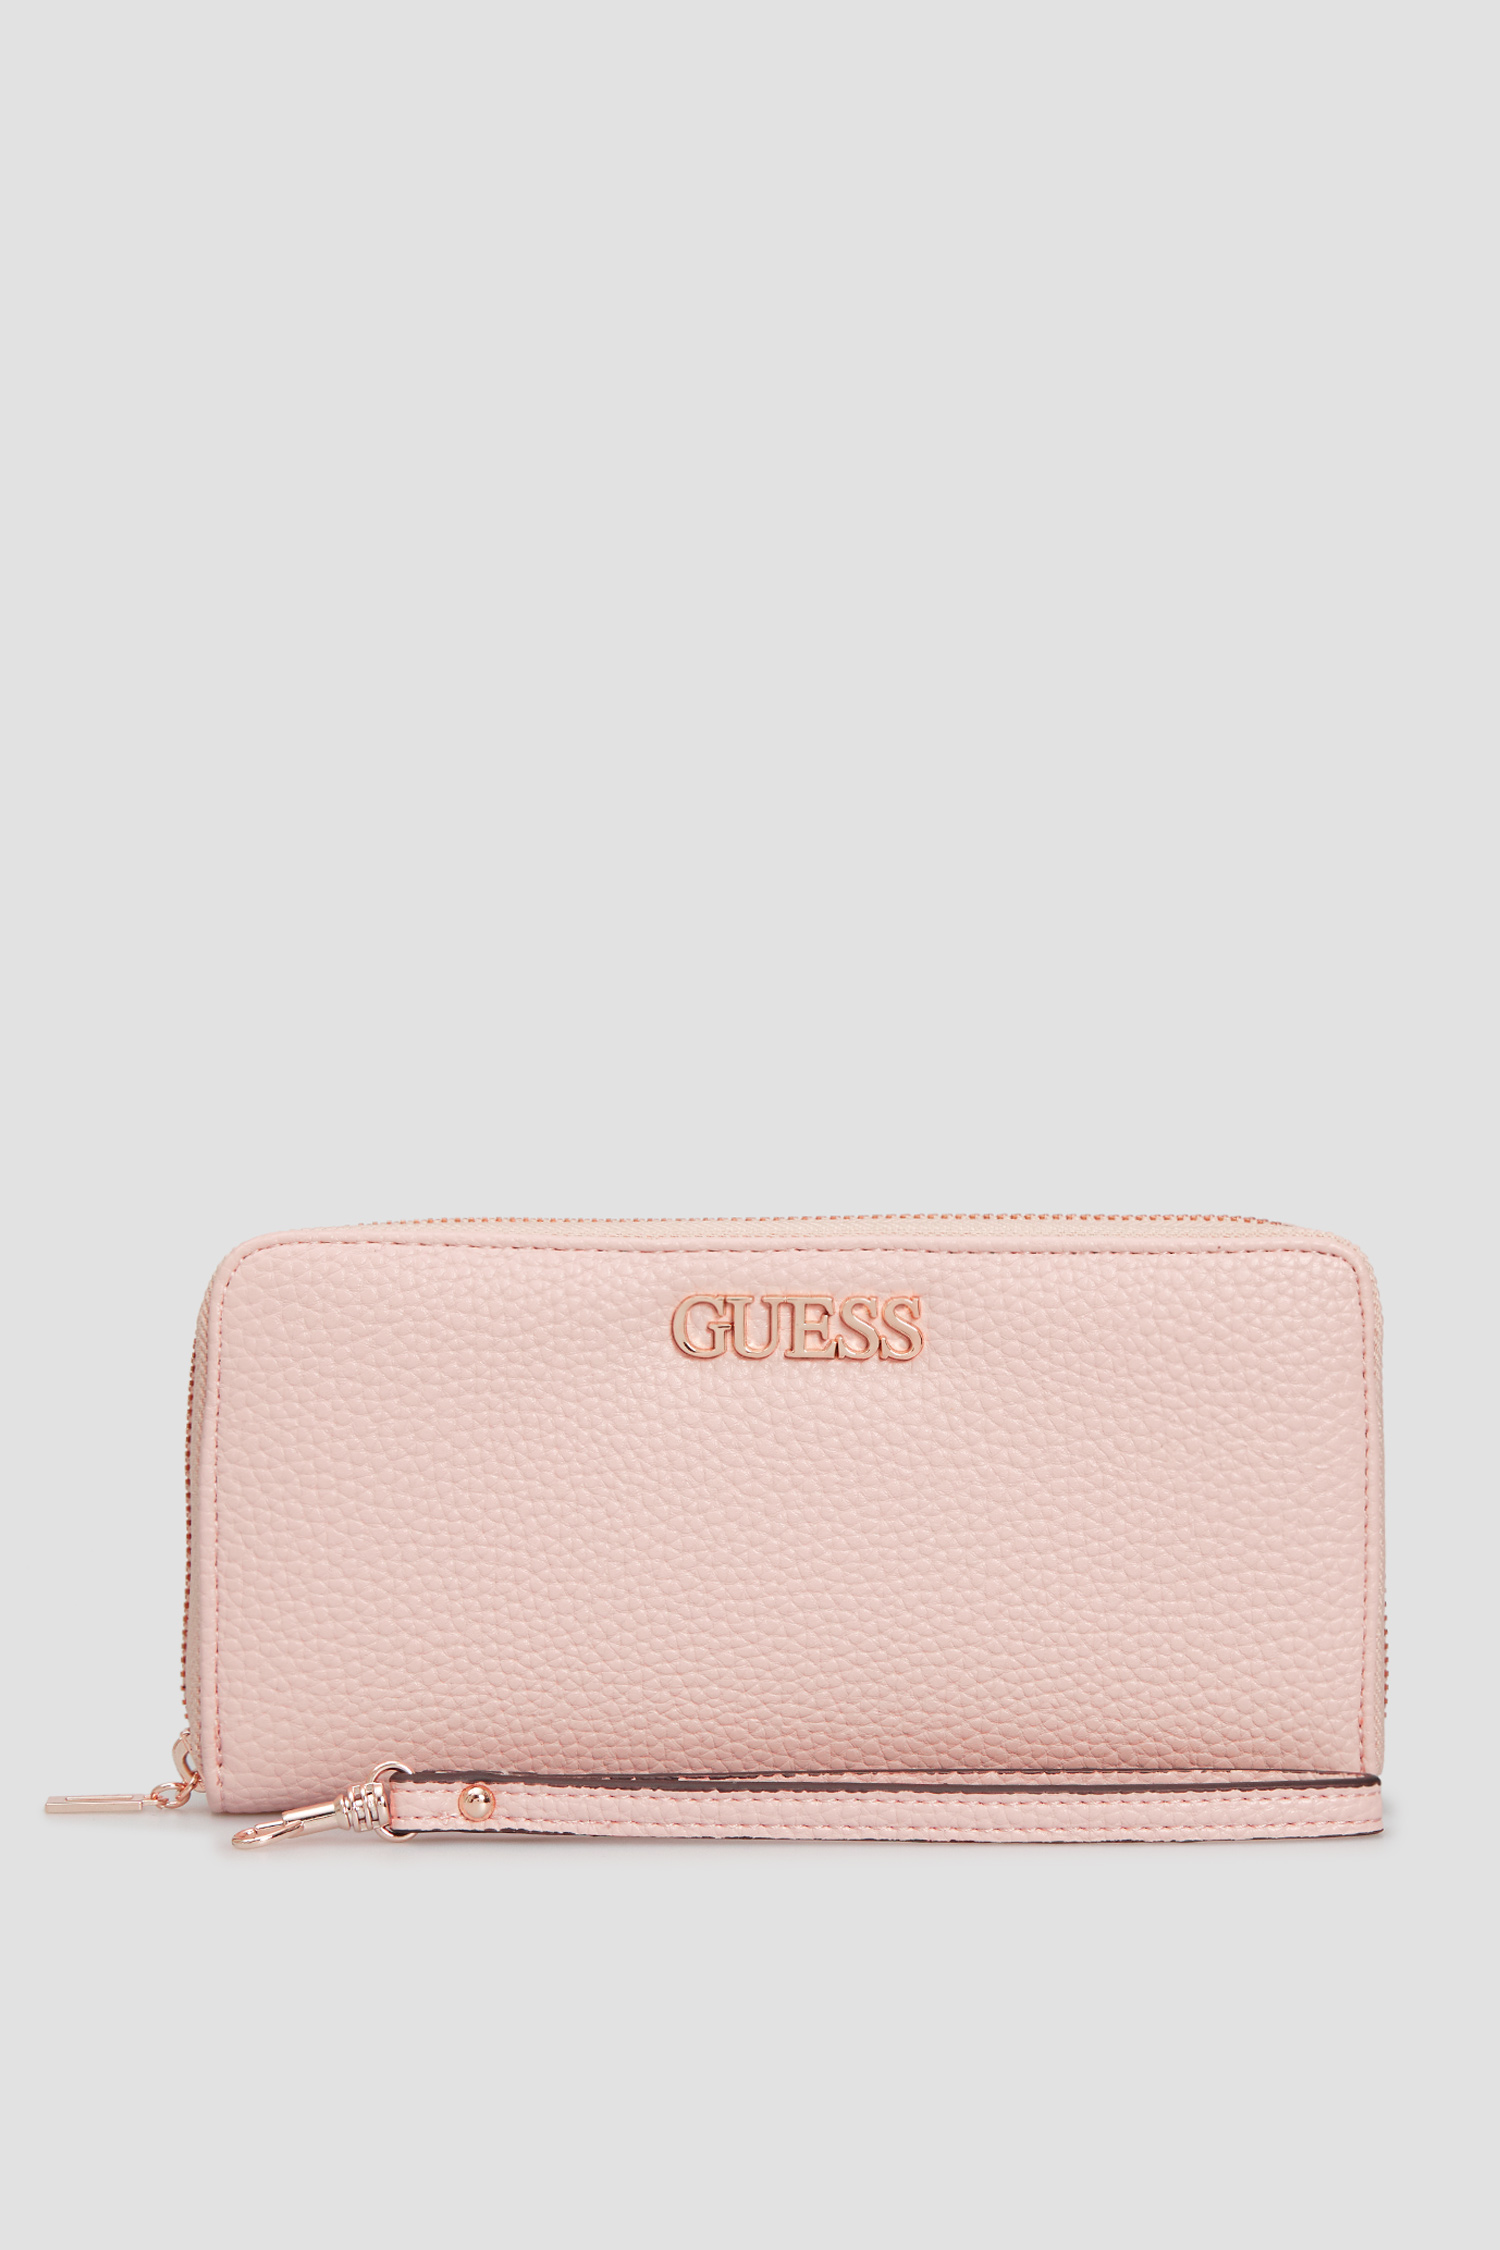 Пудровий гаманець для дівчат Guess SWRR74.55460;RWO